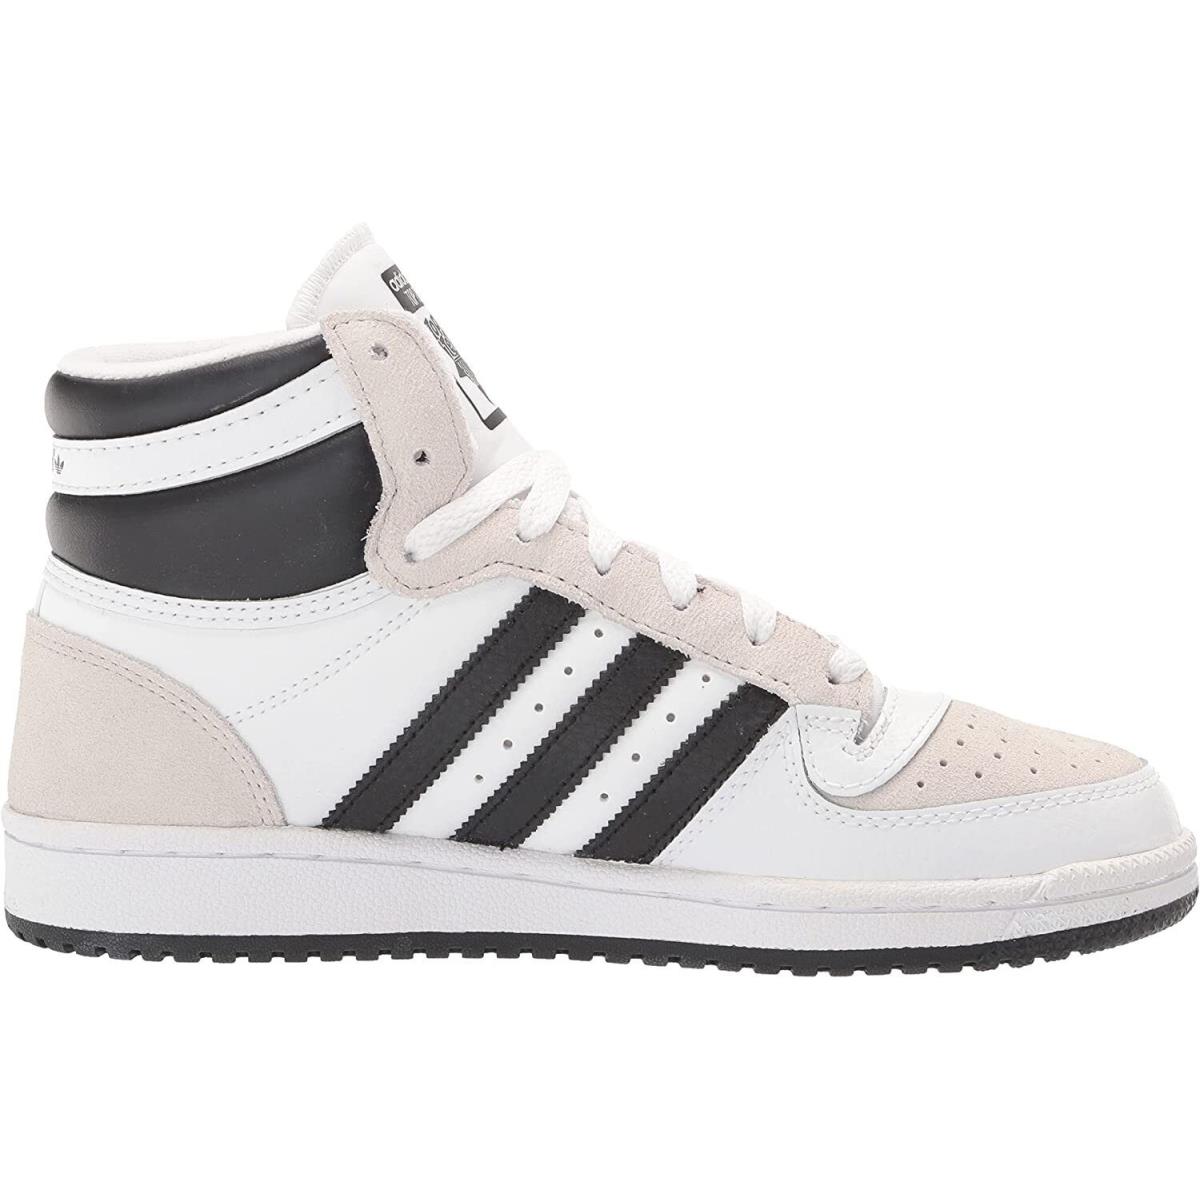 Adidas Top Ten RB Hi 3-Stripe Shoes White Black Men`s Size 10 GX0741